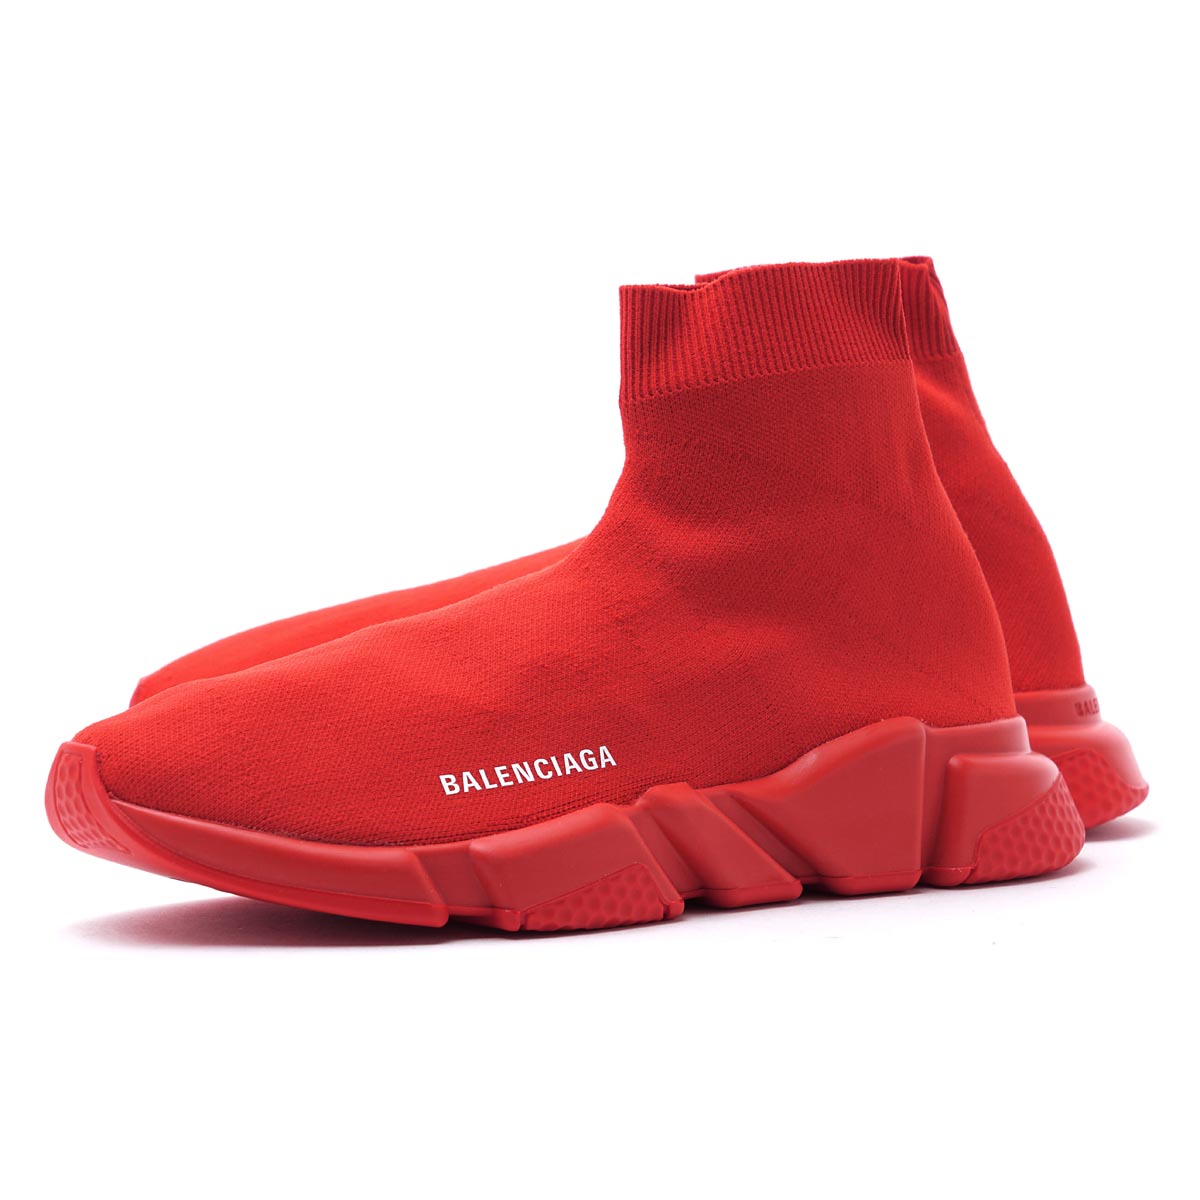 Balenciaga Red Athletic Shoes for Men  Mercari